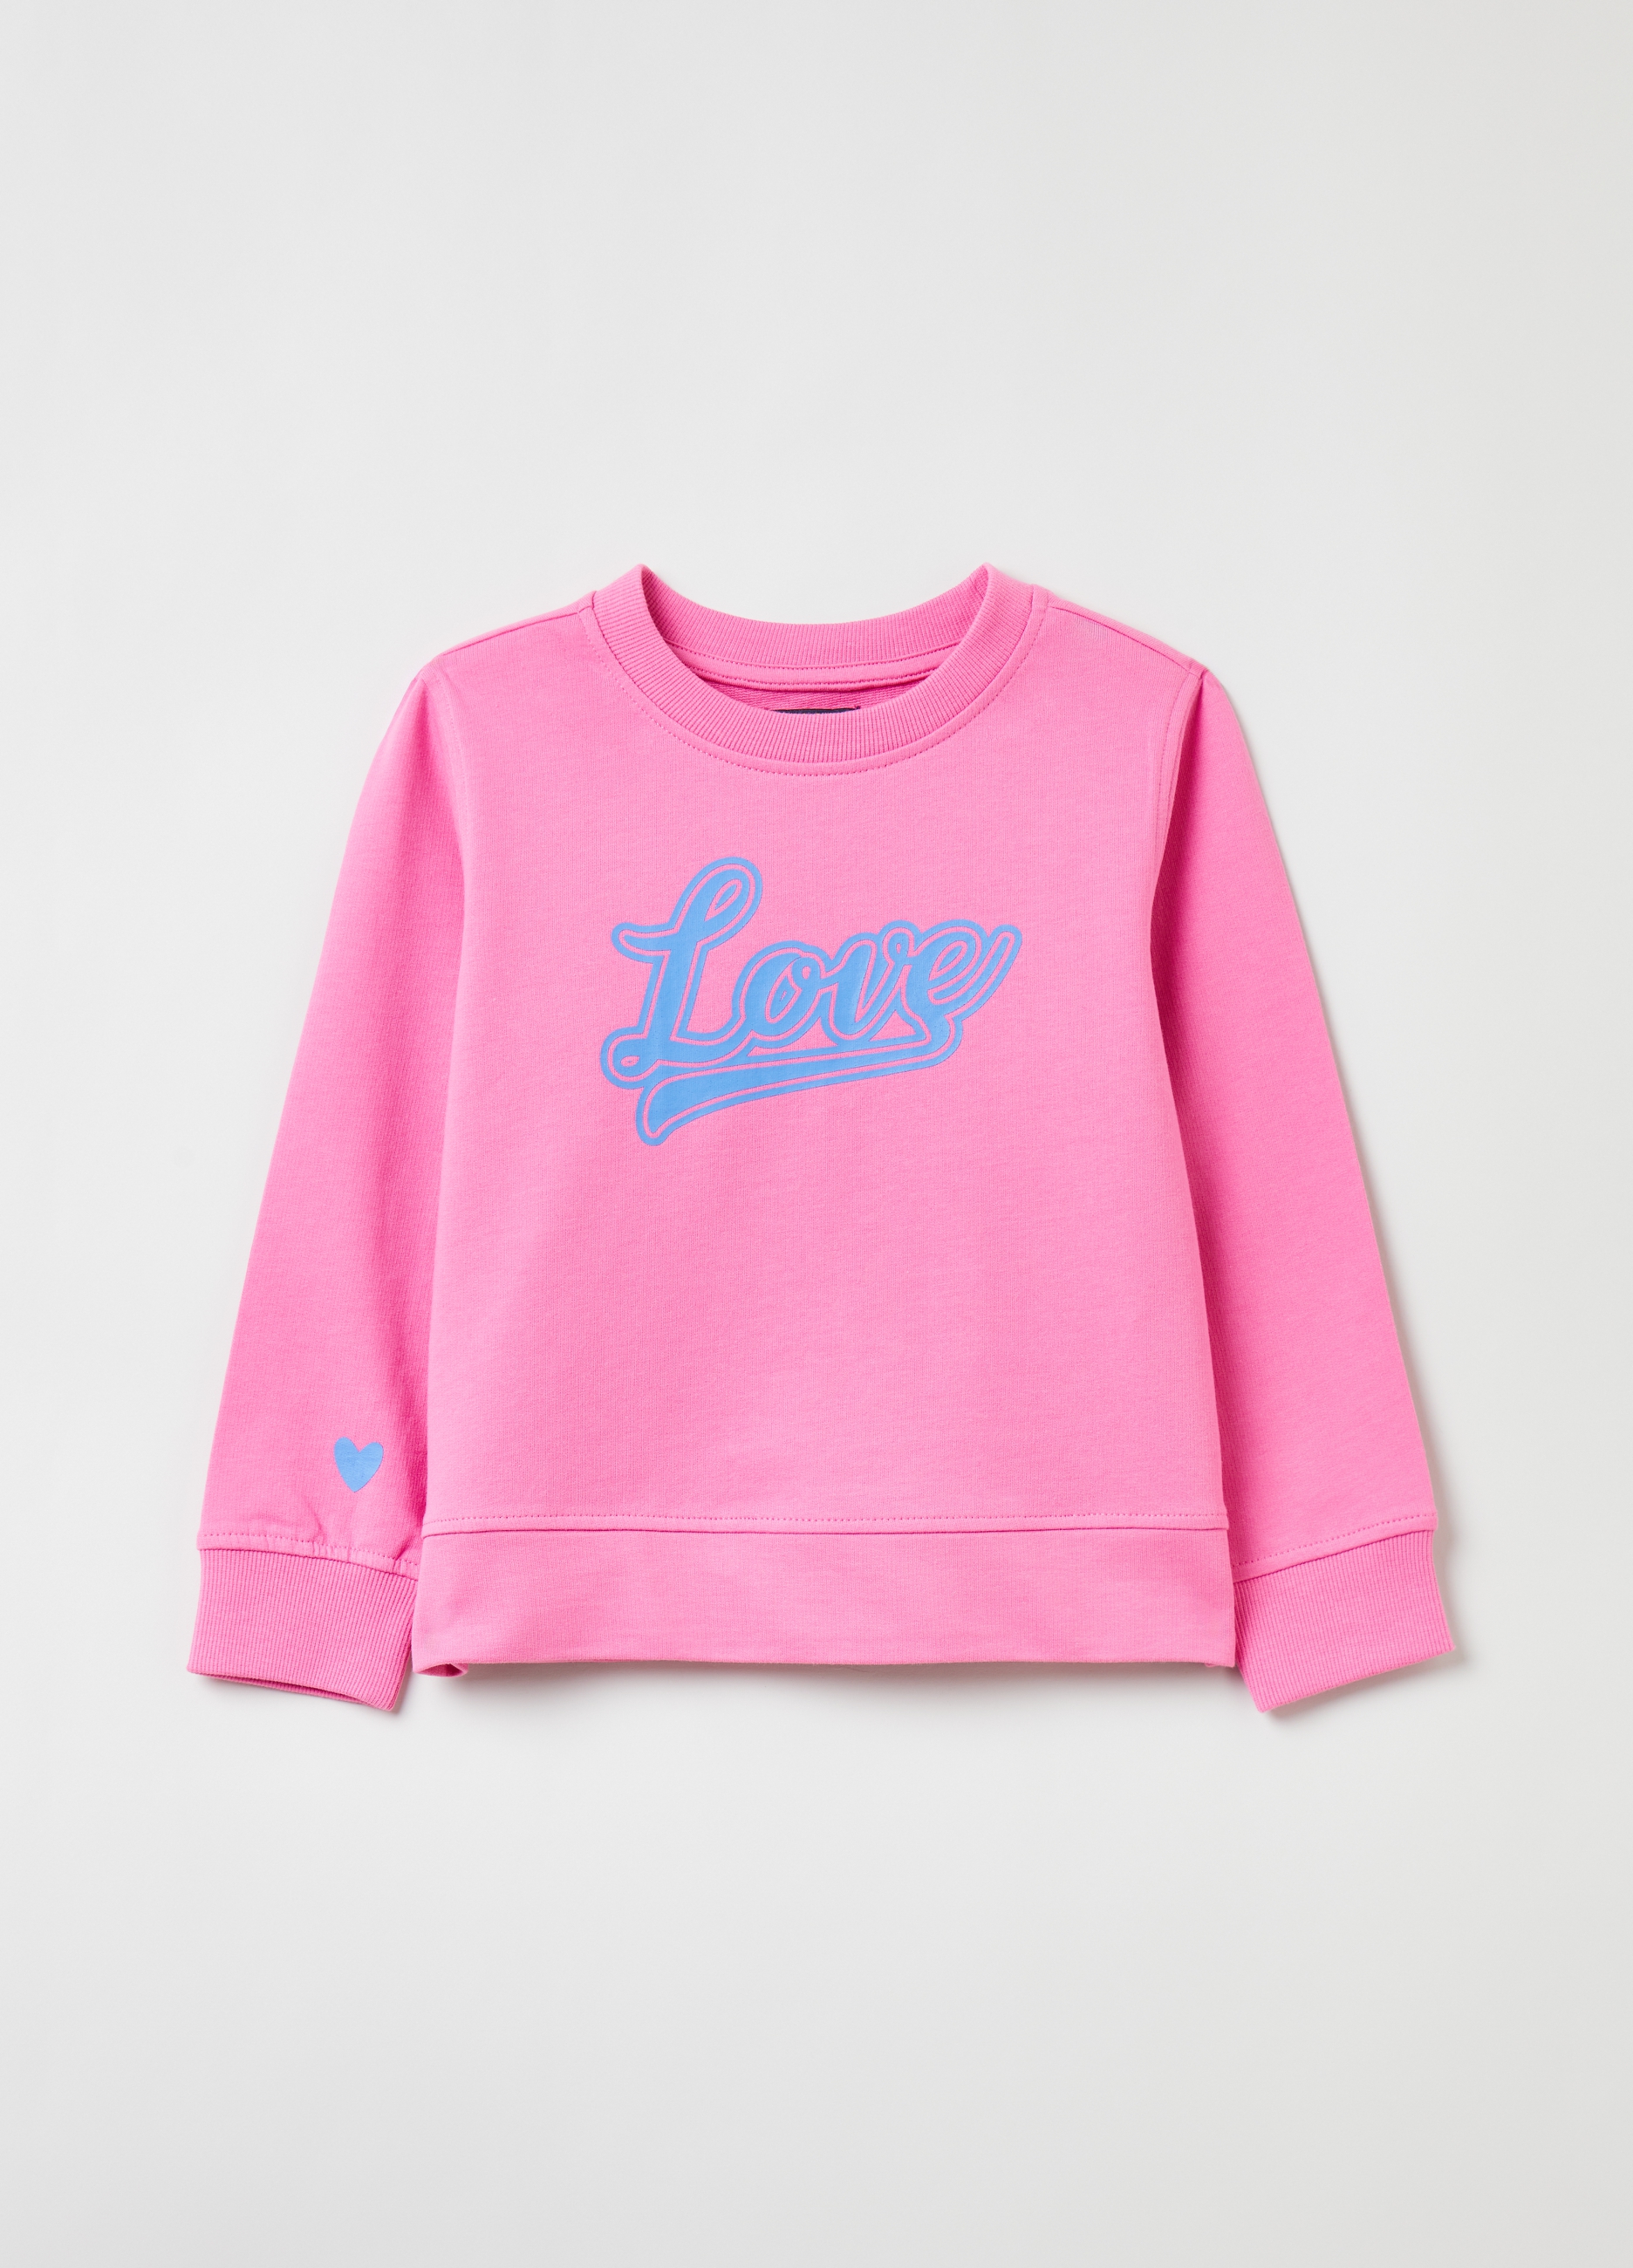 Фуфайка OVS для девочек, розовая, 3-4 лет, 1843535 комплект трикотажный для девочек майка шорты фуфайка футболка